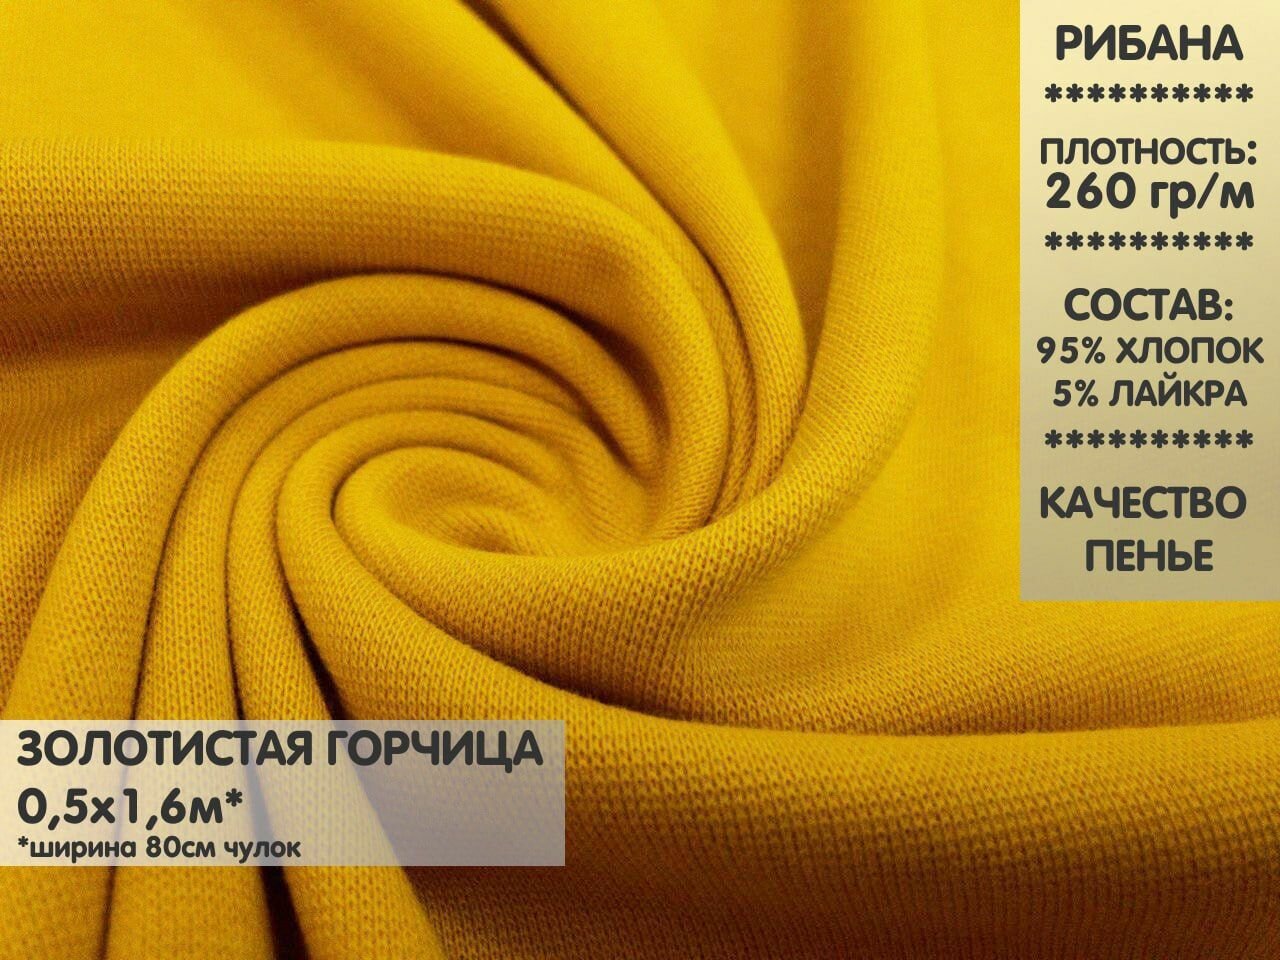 Ткань Рибана с лайкрой качество Компакт Пенье